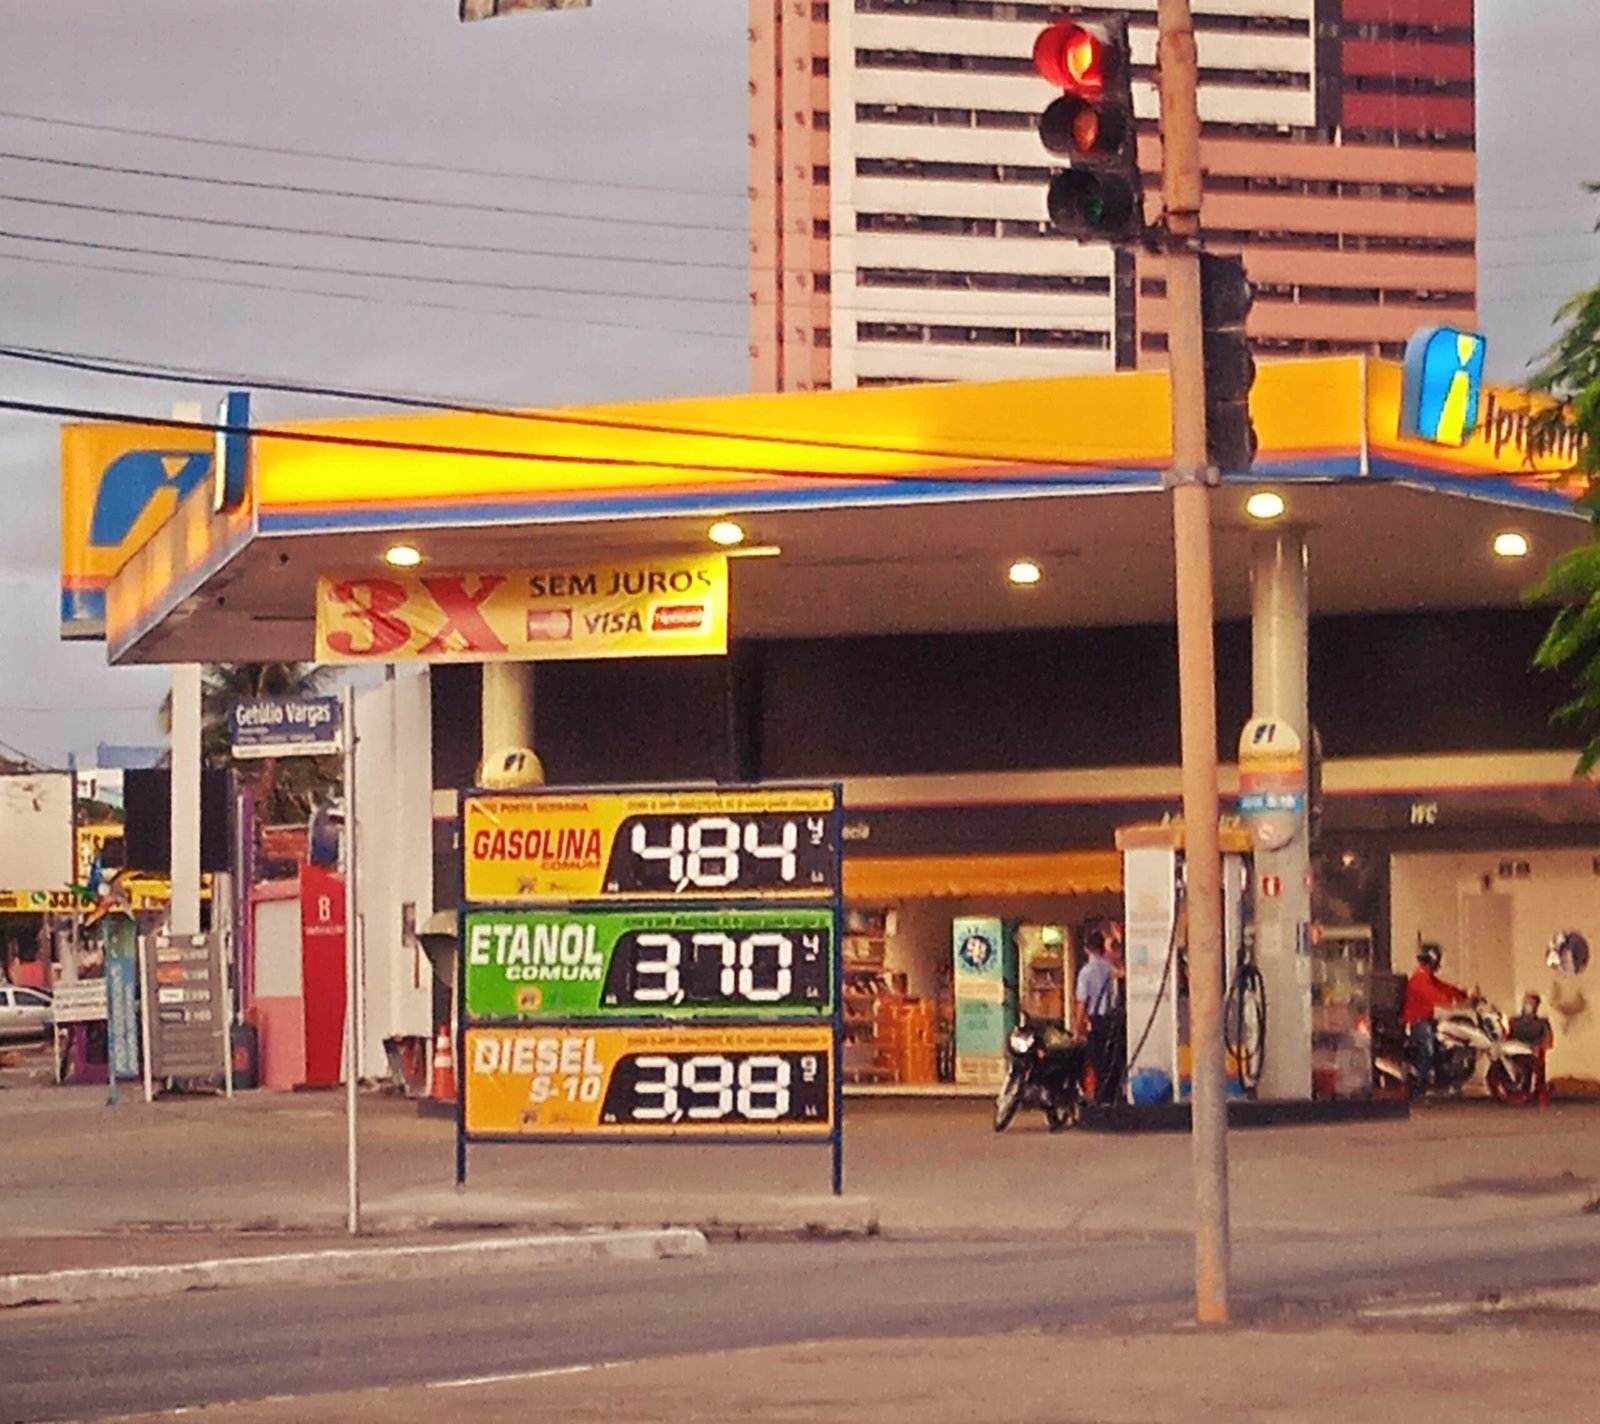 posto murilopolis3 scaled - Para atrair consumidores, postos de gasolina oferecem descontos que não existem